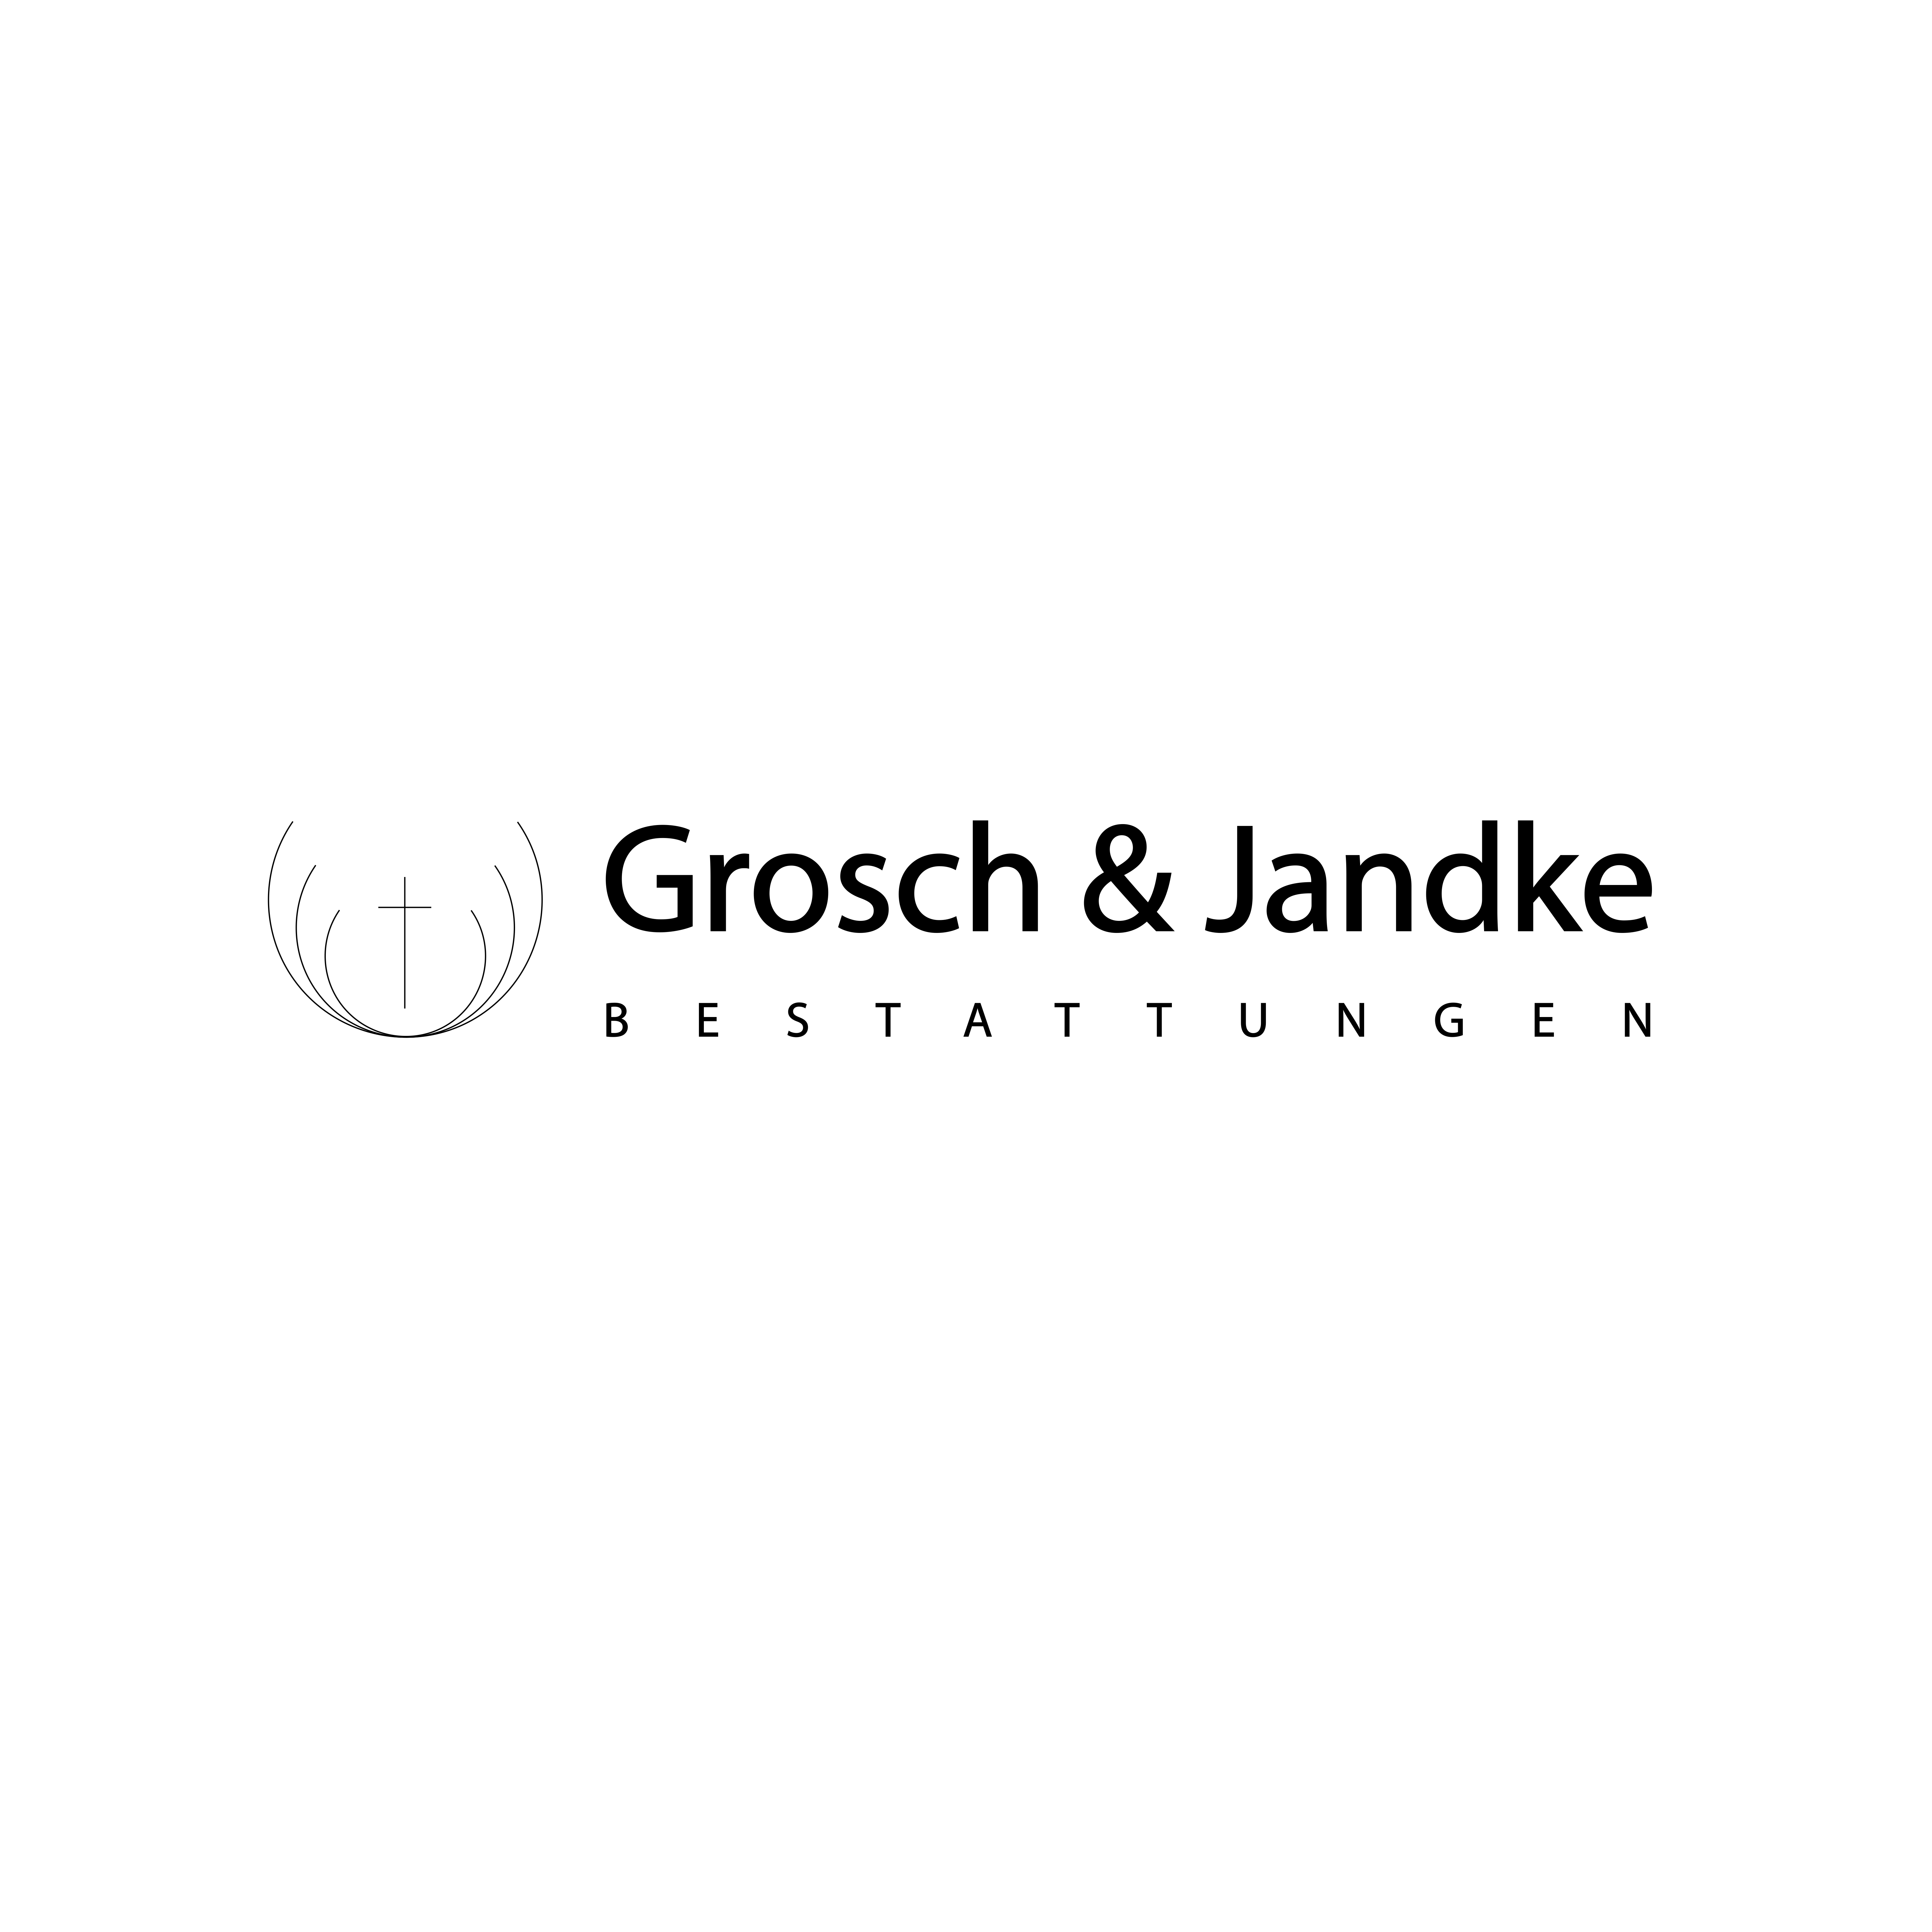 Grosch & Jandke Bestattungen GbR in Kassel - Logo